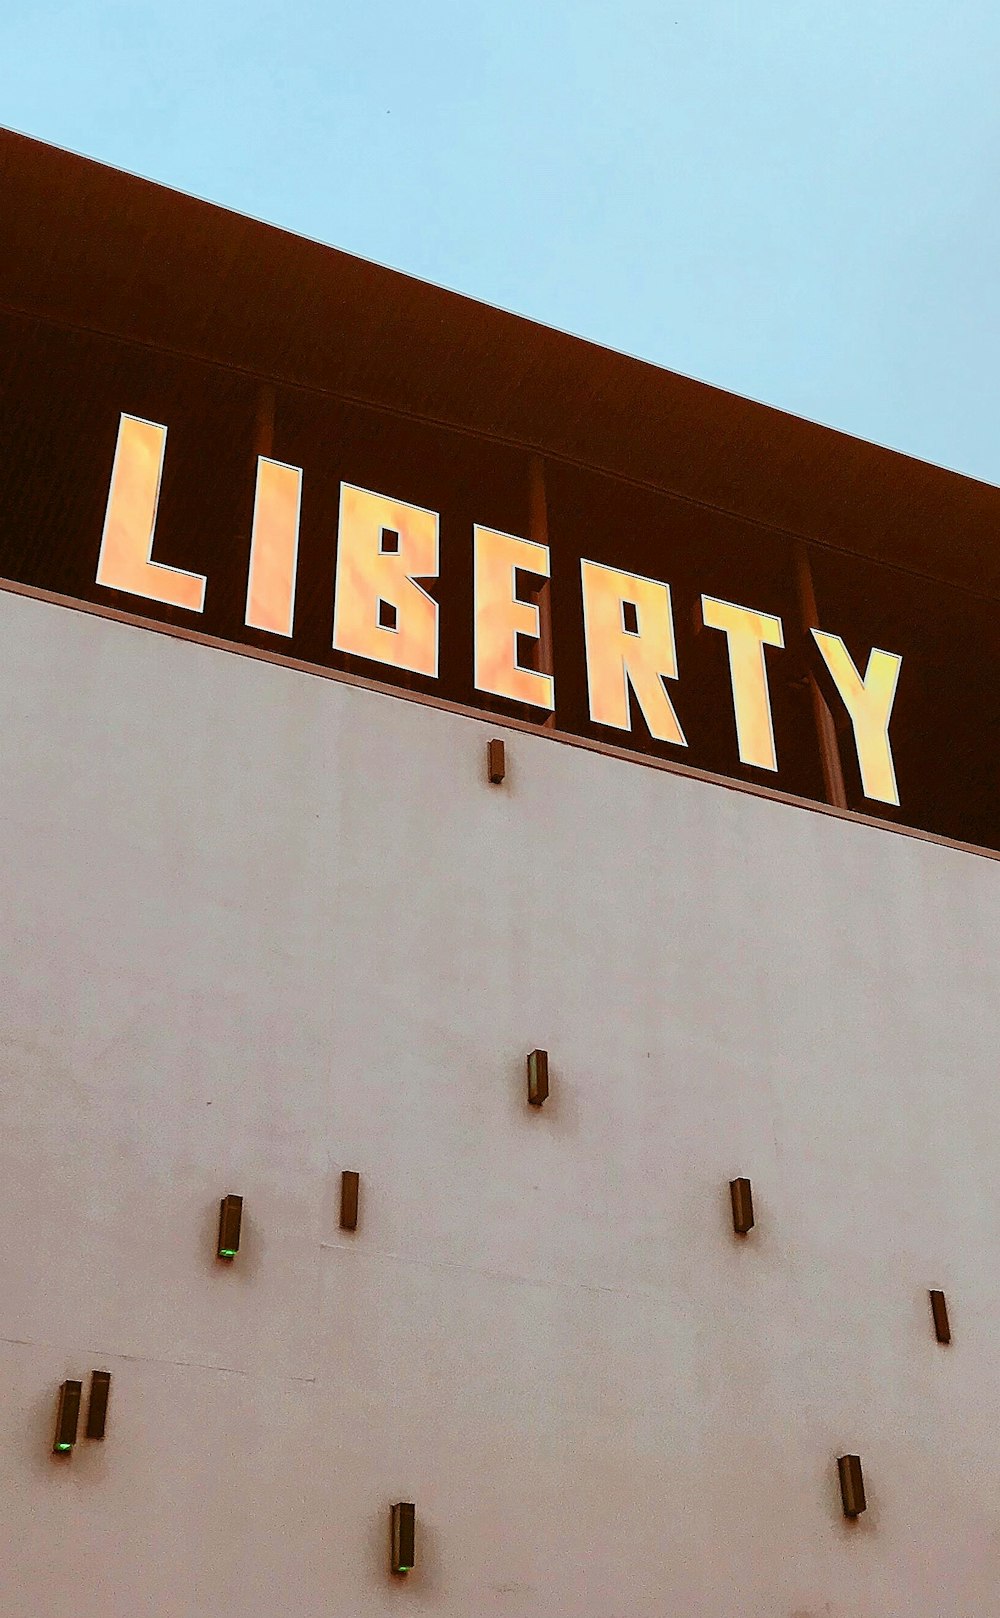 Liberty-Beschilderung an der Hauswand